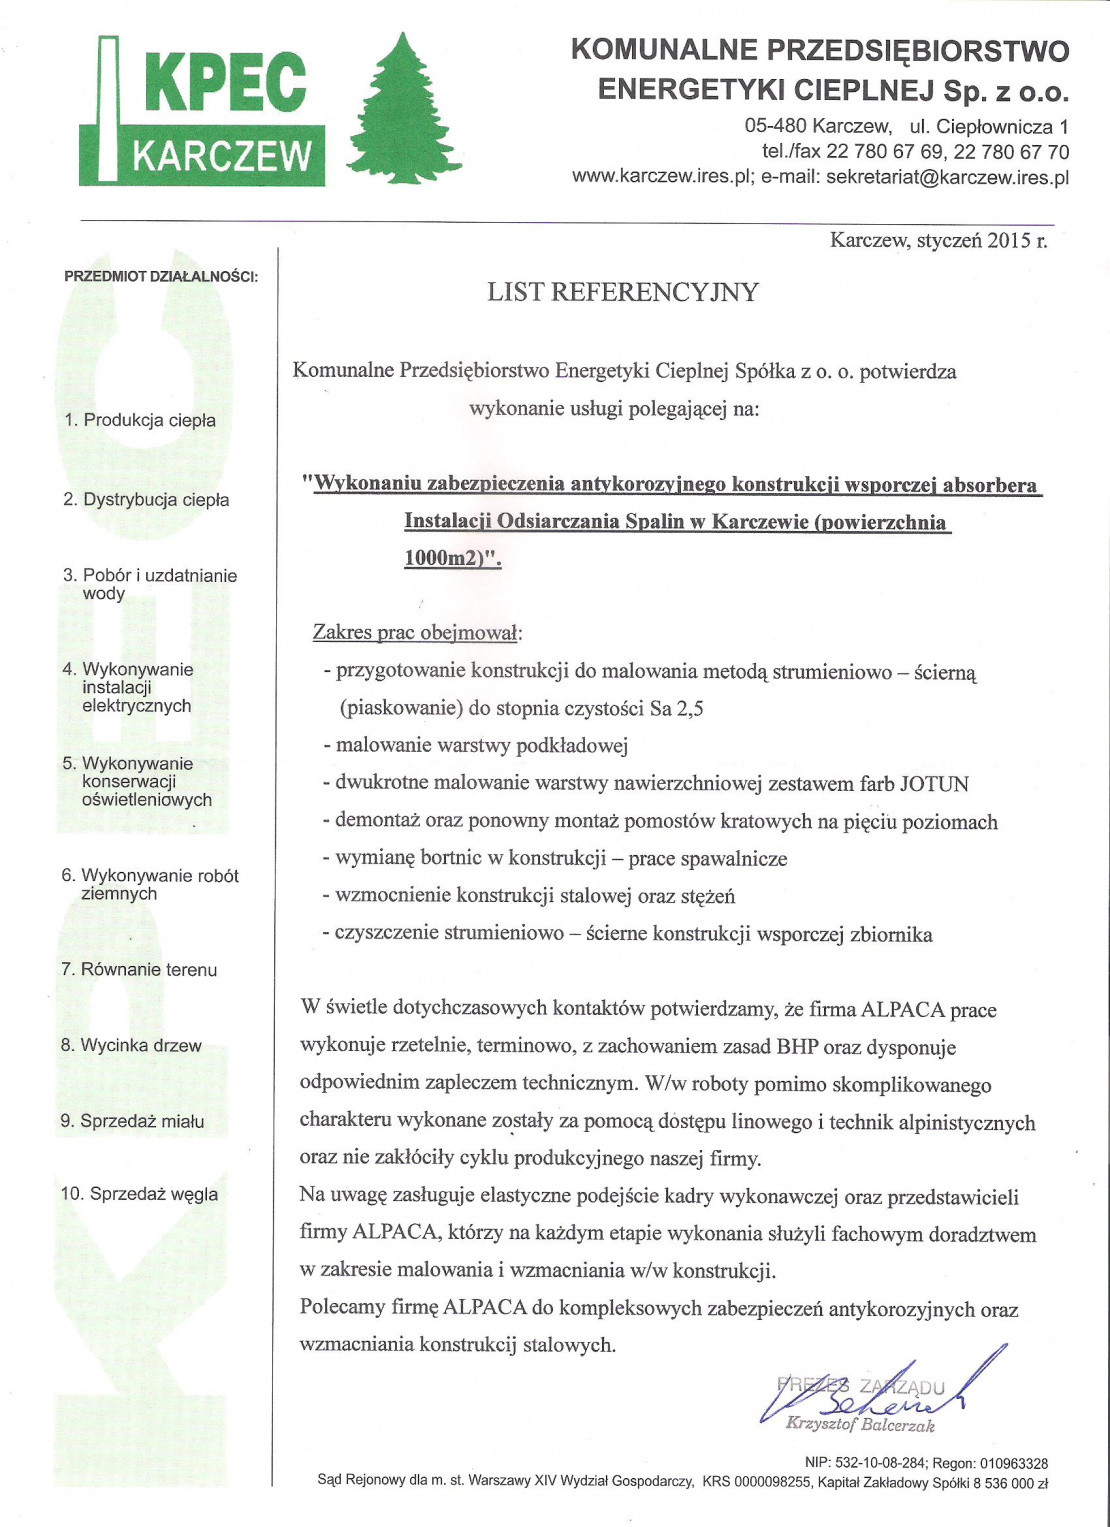 List referencyjny dotyczący zabezpieczenia antykorozyjnego konstrukcji wsporczej absorbera IOS w KPEC Karczew.